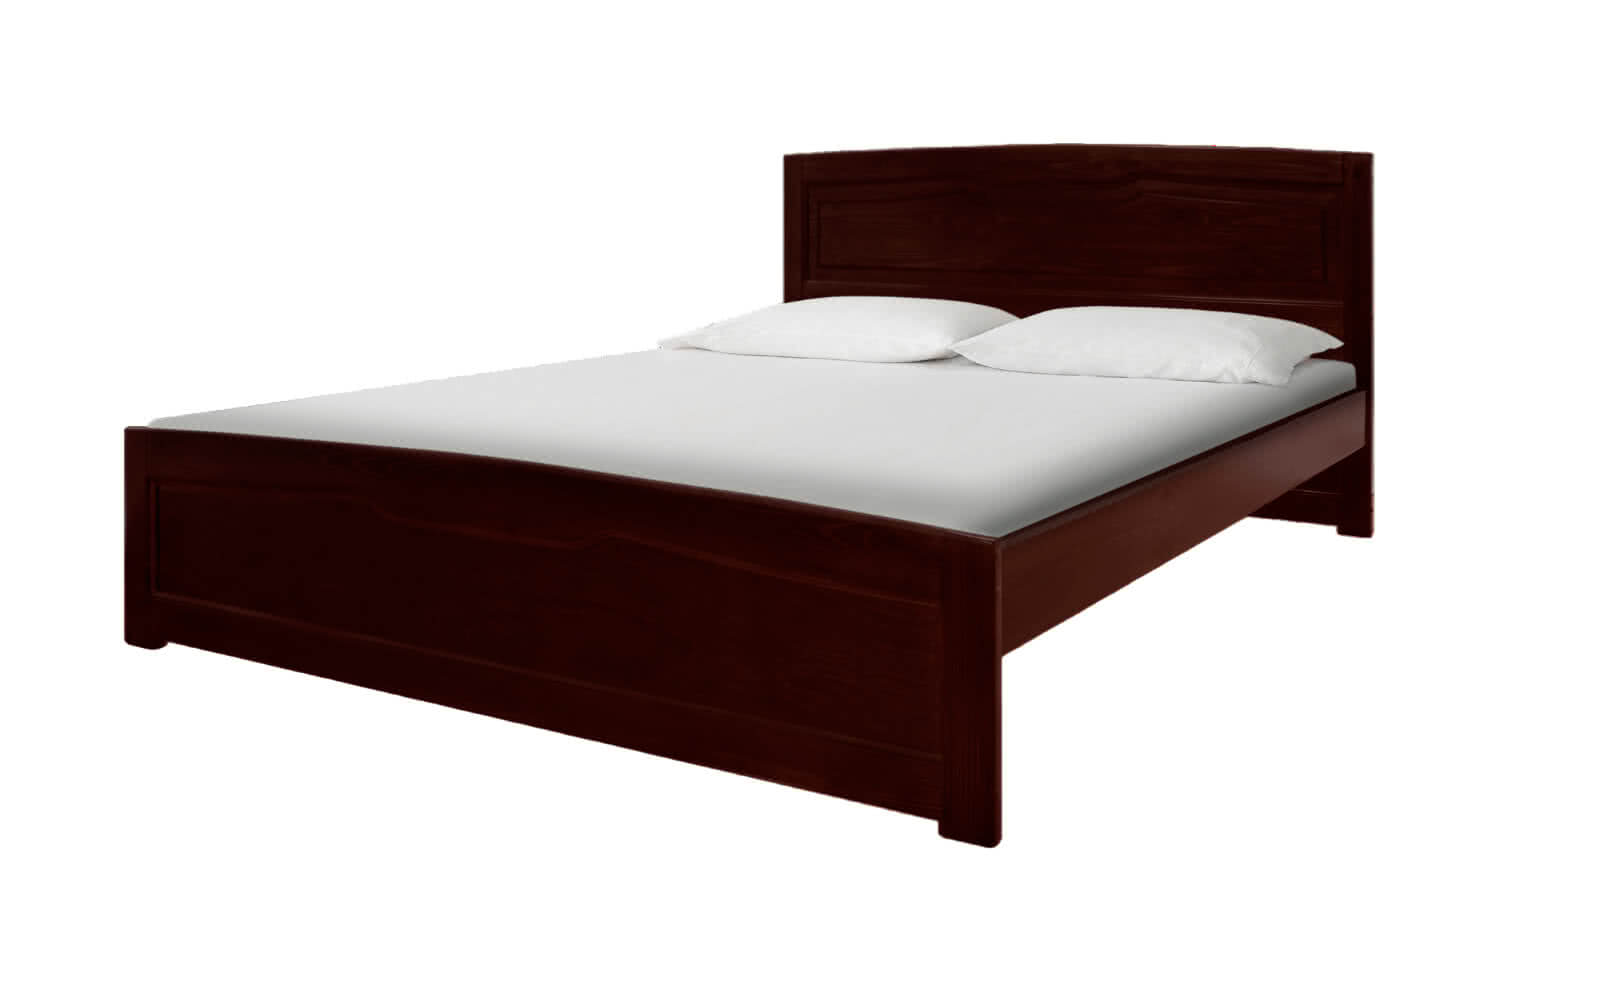 Купить кровать от производителя новосибирск. Кровать ВМК-Шале Ариэлла 2. Кровать двуспальная Ариэлла 2. Кровать ВМК-Шале Ариэлла 1. Столплит кровать 160х200 дерево.